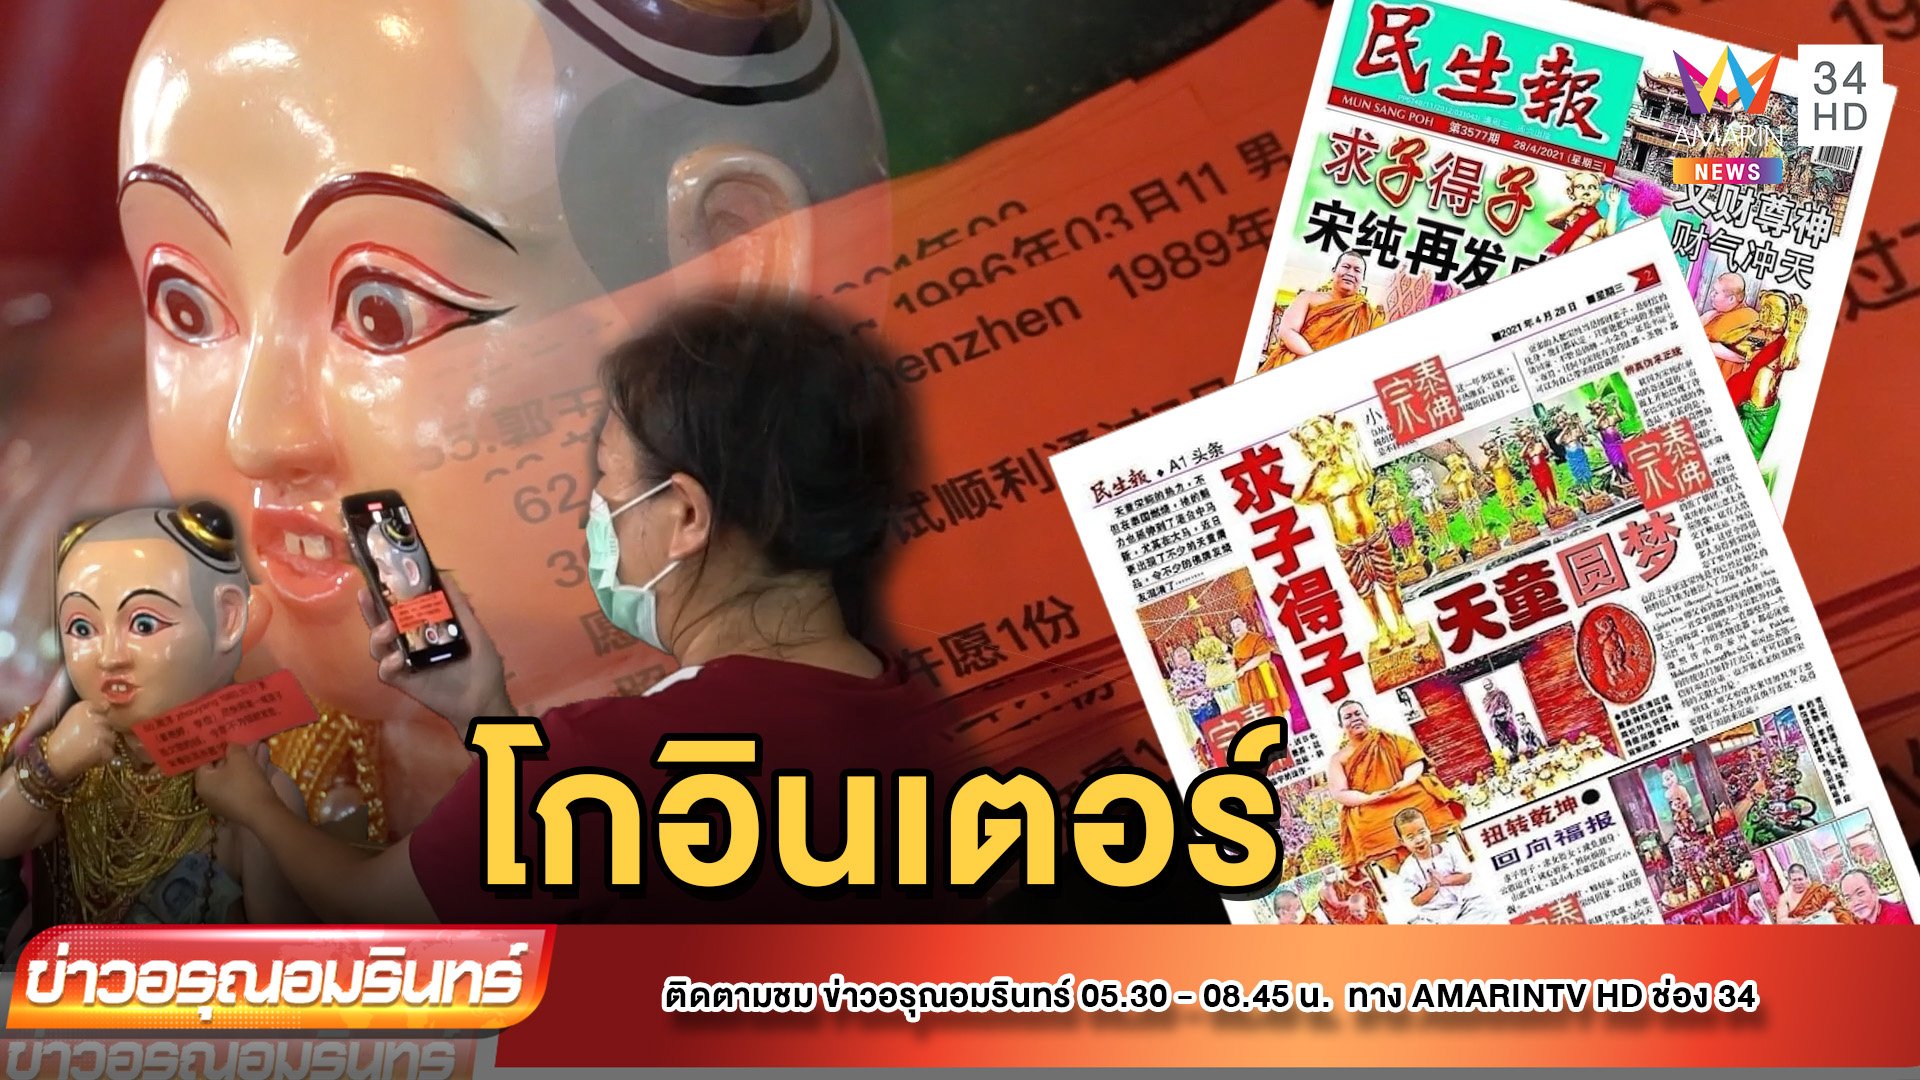 “ไอ้ส้มฉุน” โกอินเตอร์ ทัวร์จีนจ้างไกด์ขอพรออนไลน์ | ข่าวอรุณอมรินทร์ | 11 ก.ค. 65 | AMARIN TVHD34